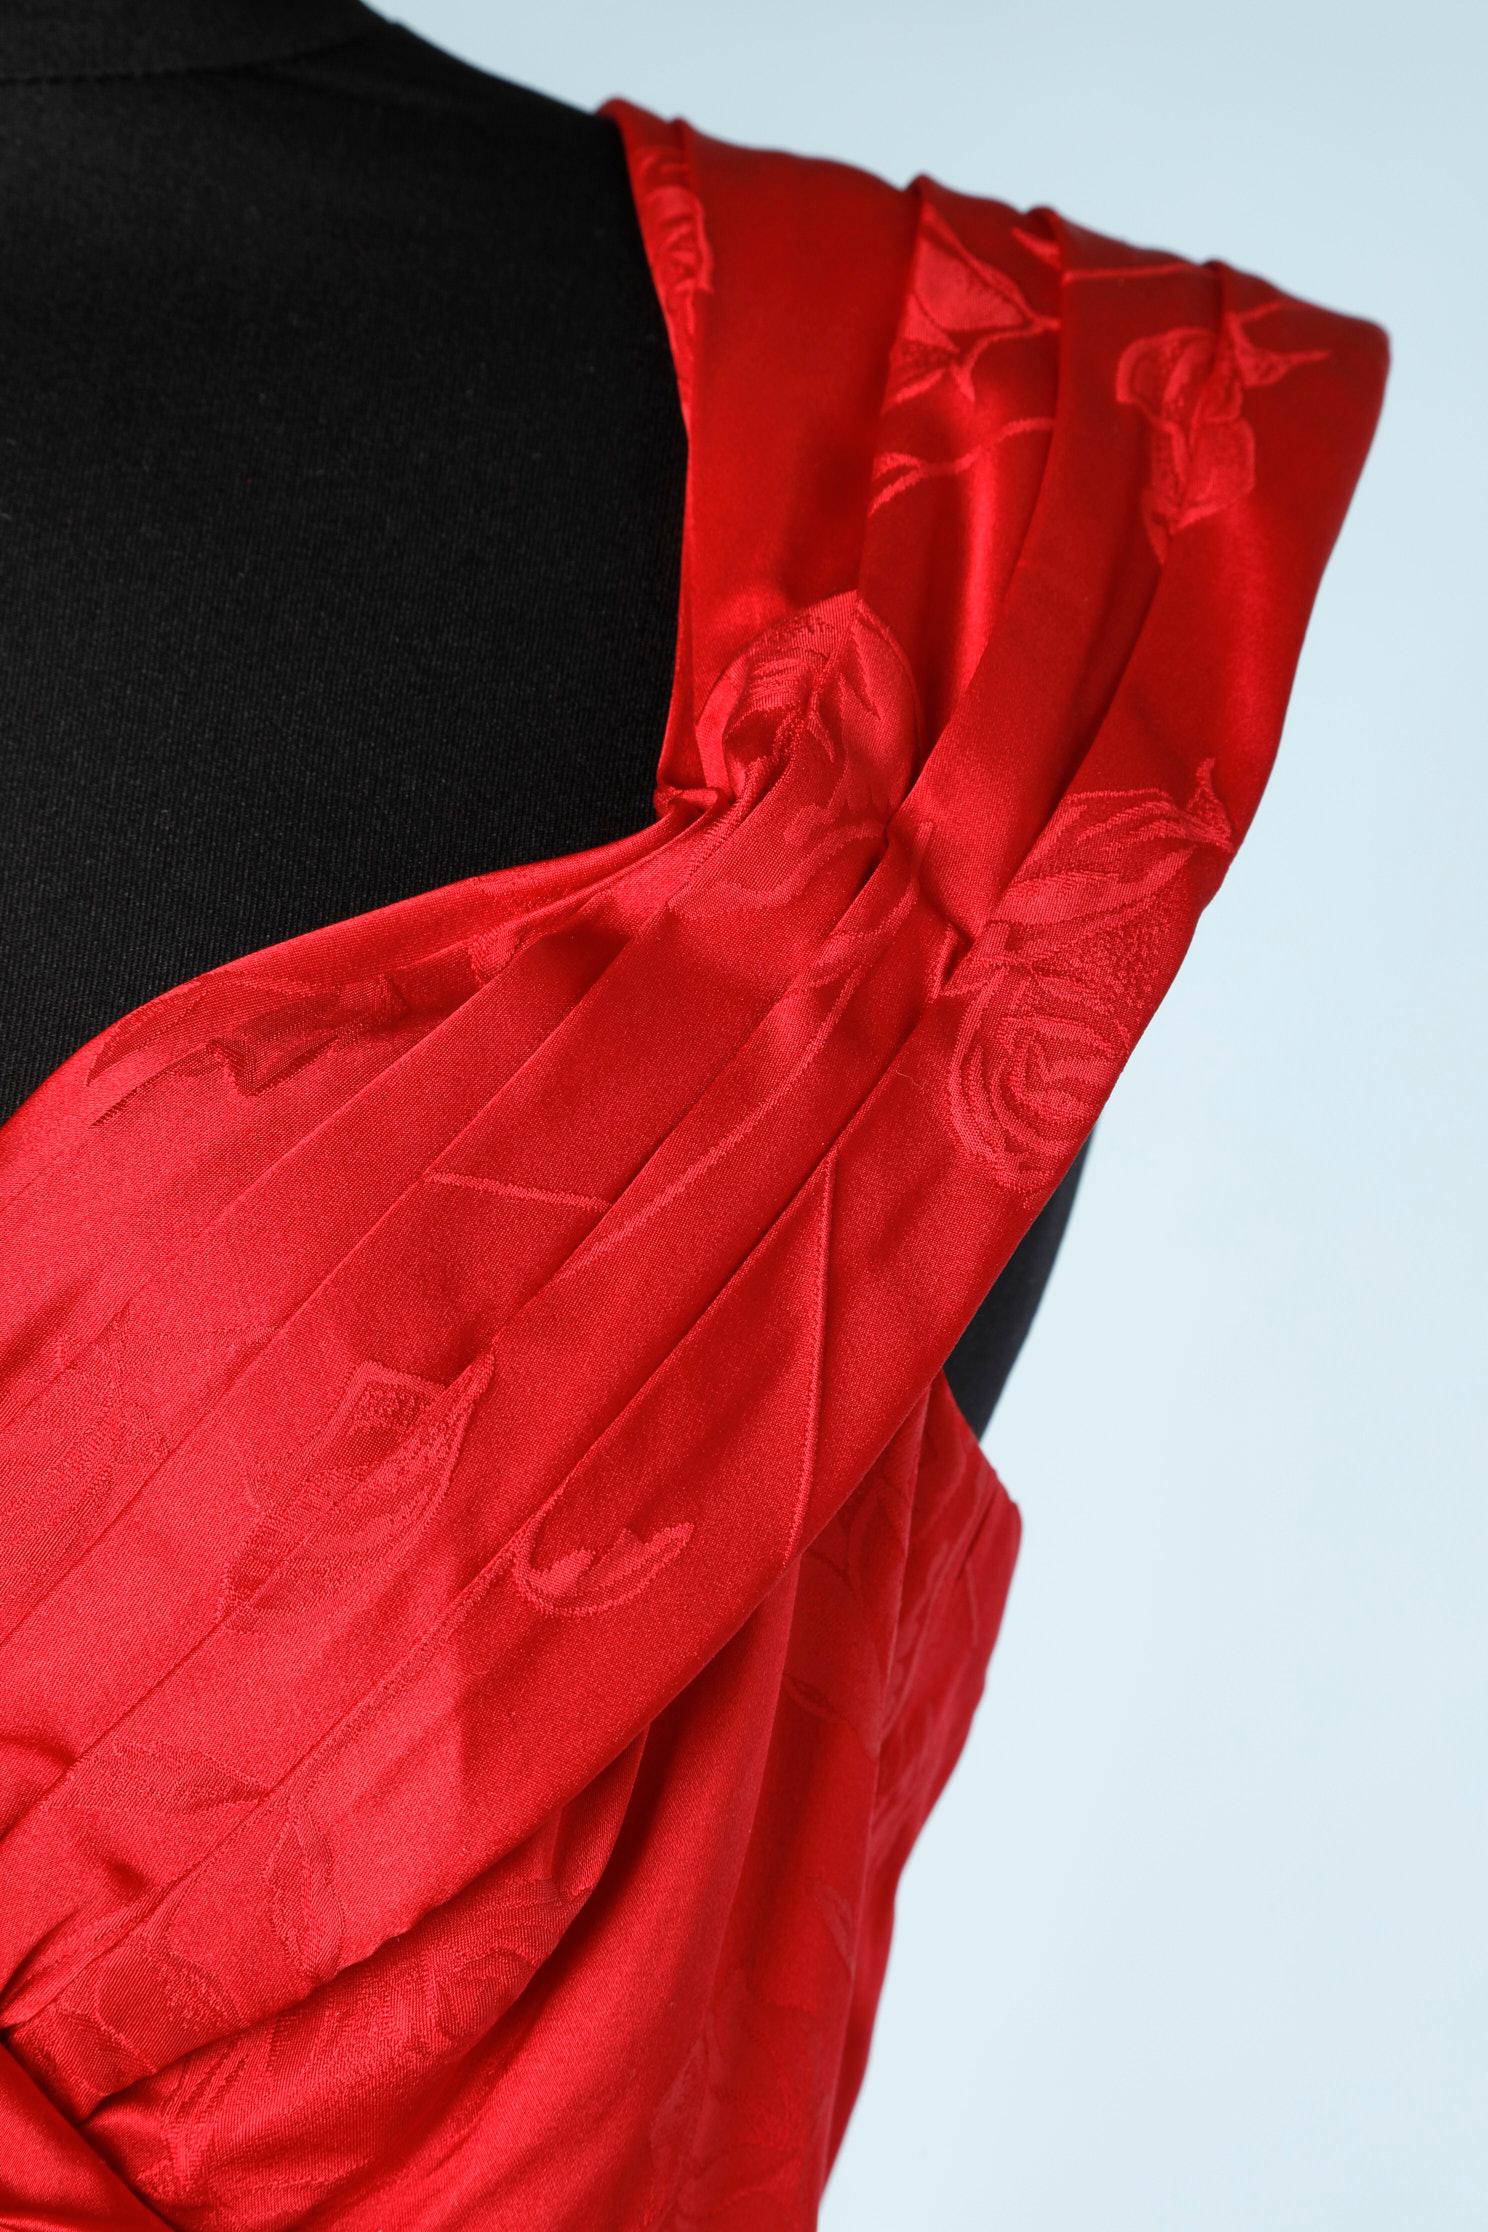 red silk formal dress